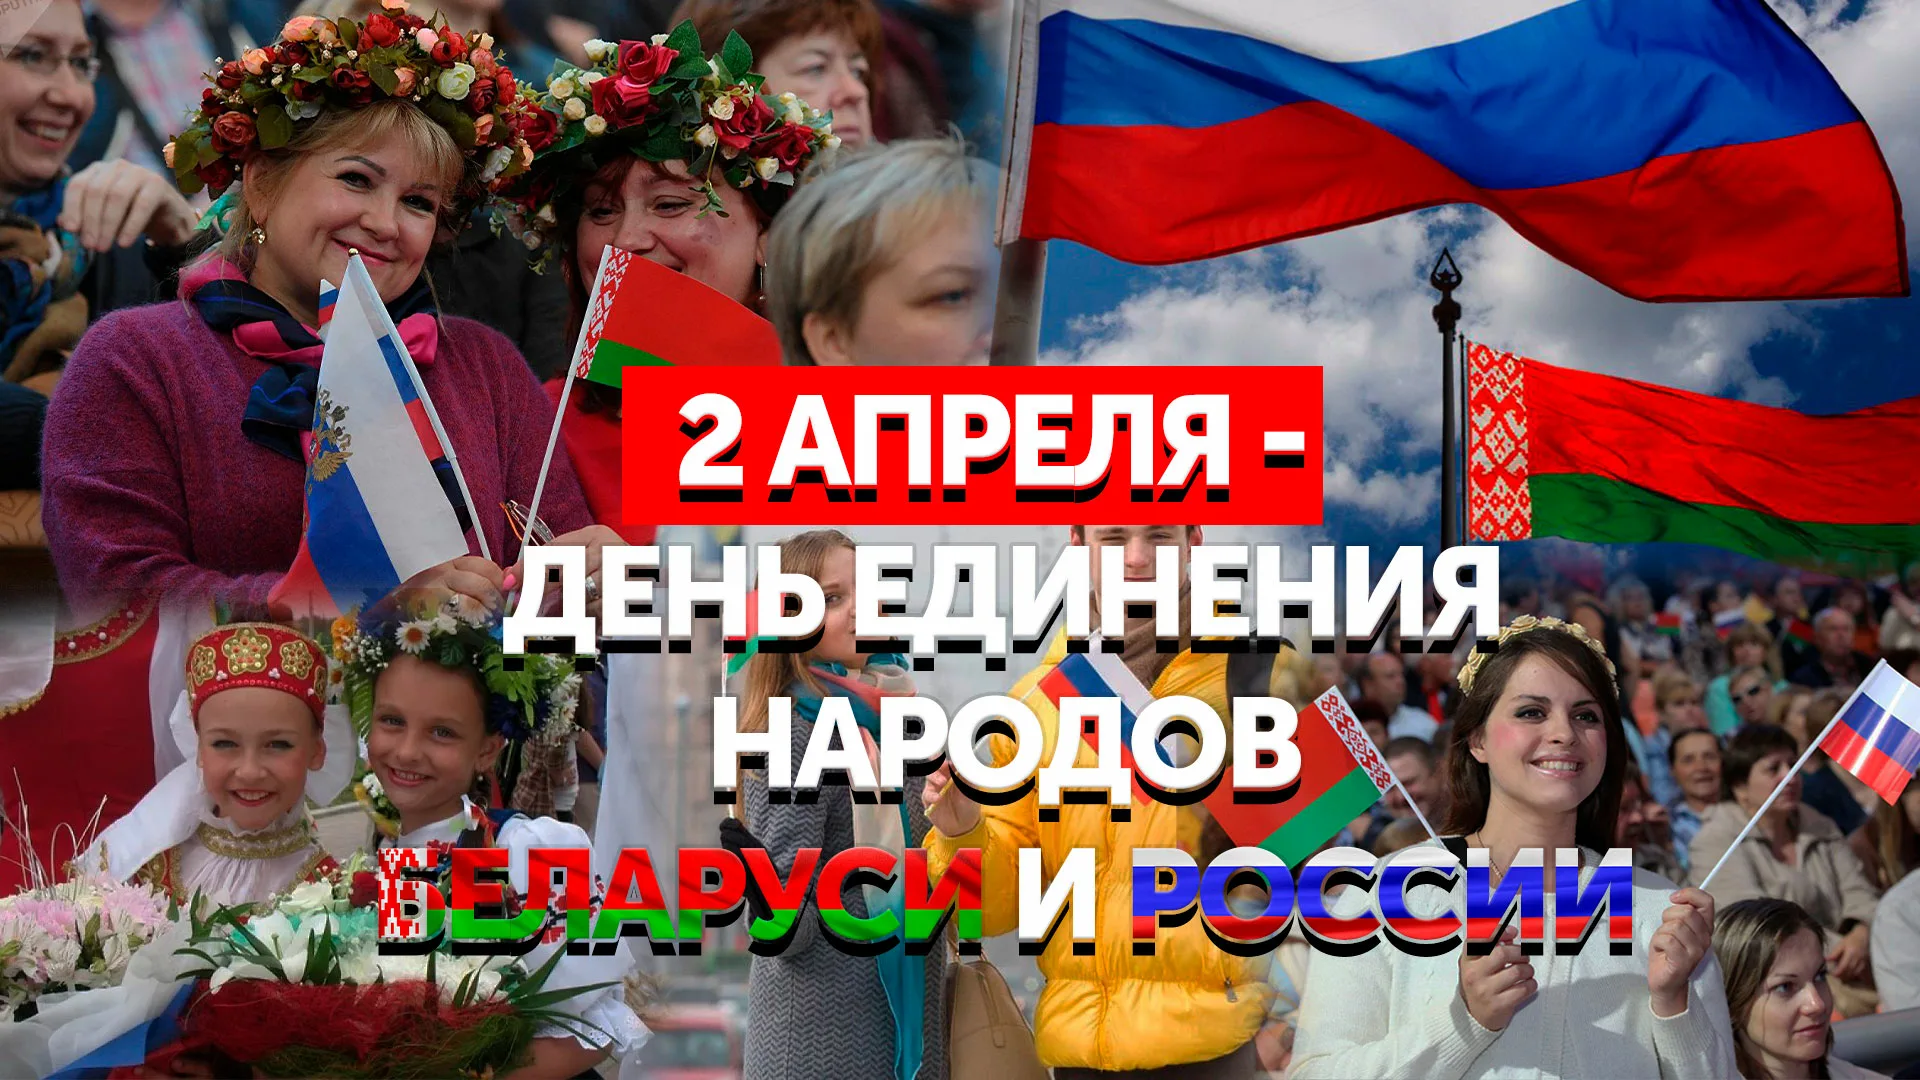 День единения народов россии и белоруссии картинки